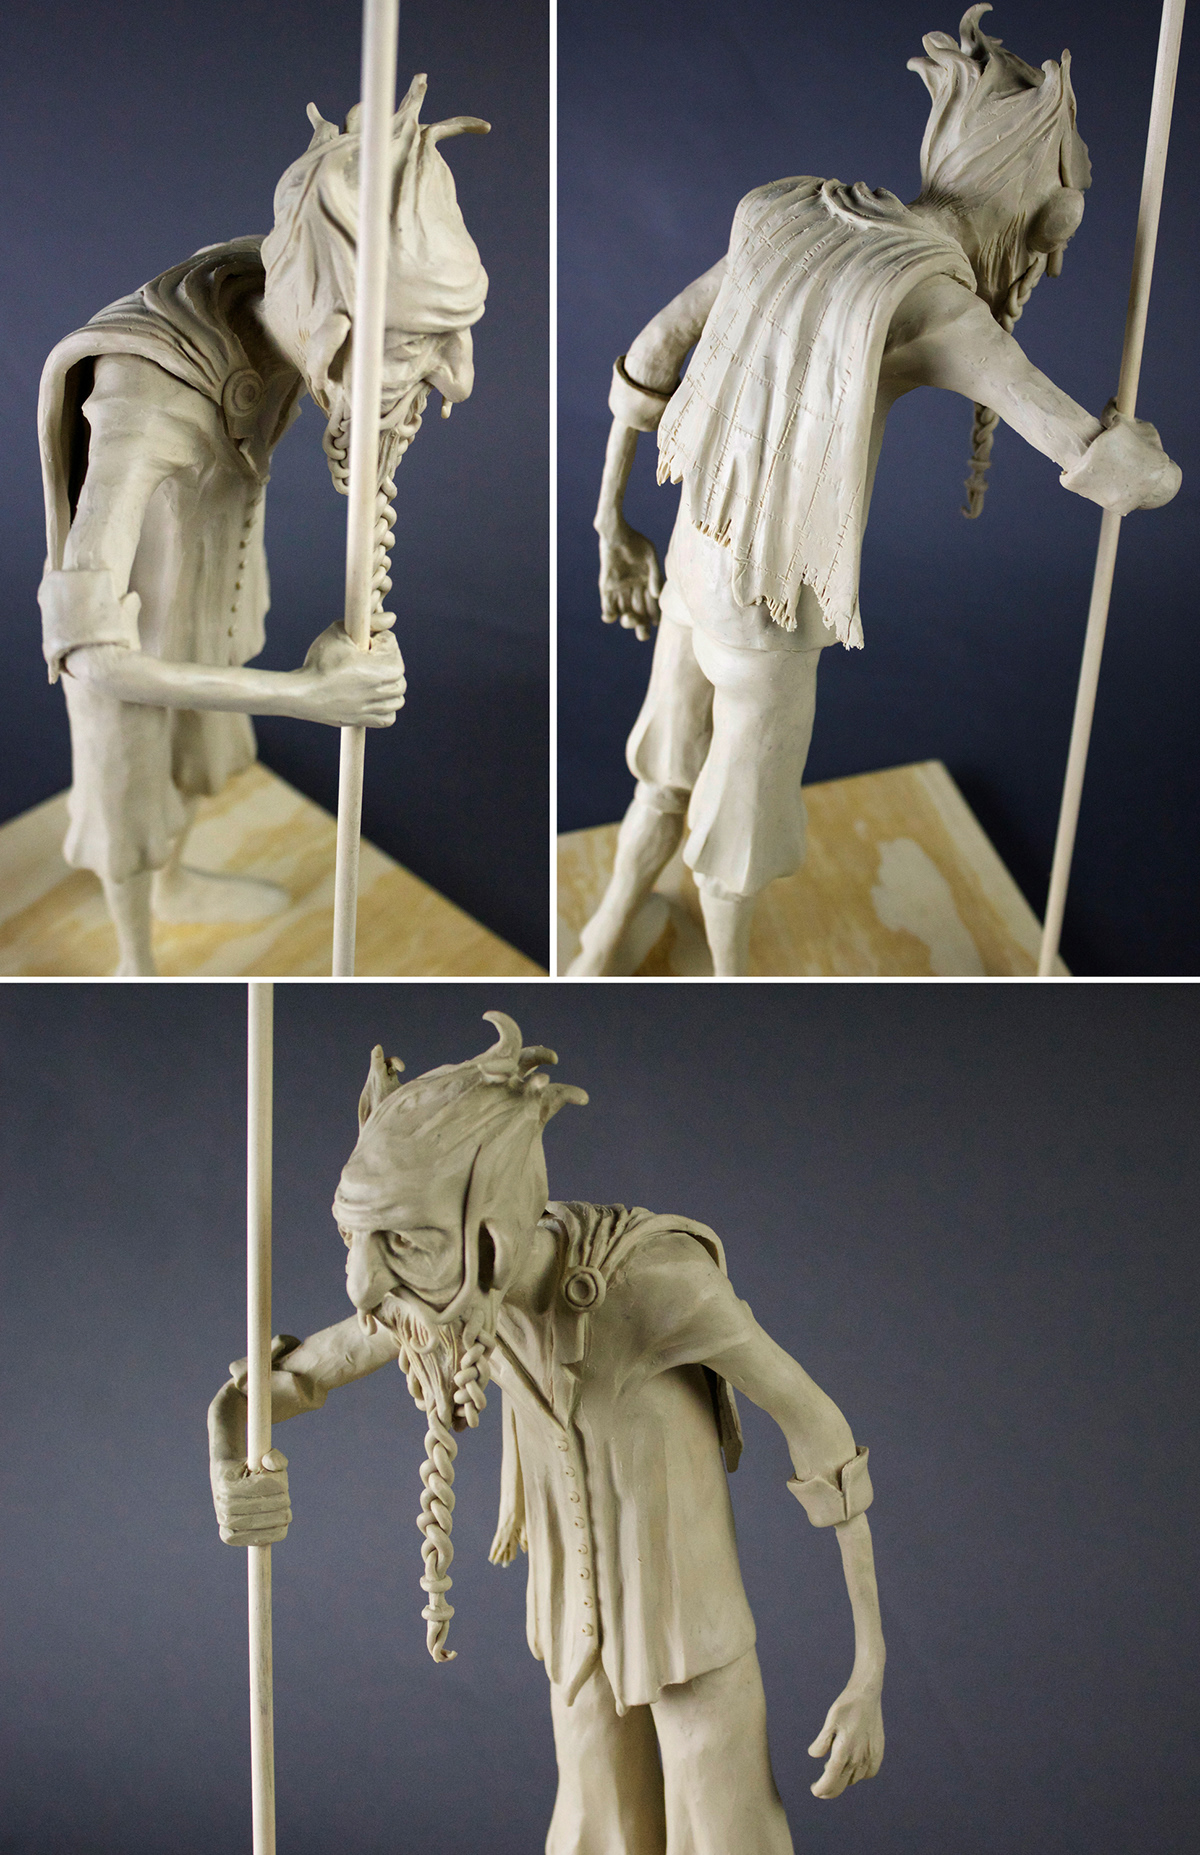 risd maquette Maquettes clay Plasticine figure Visual Development modeling story